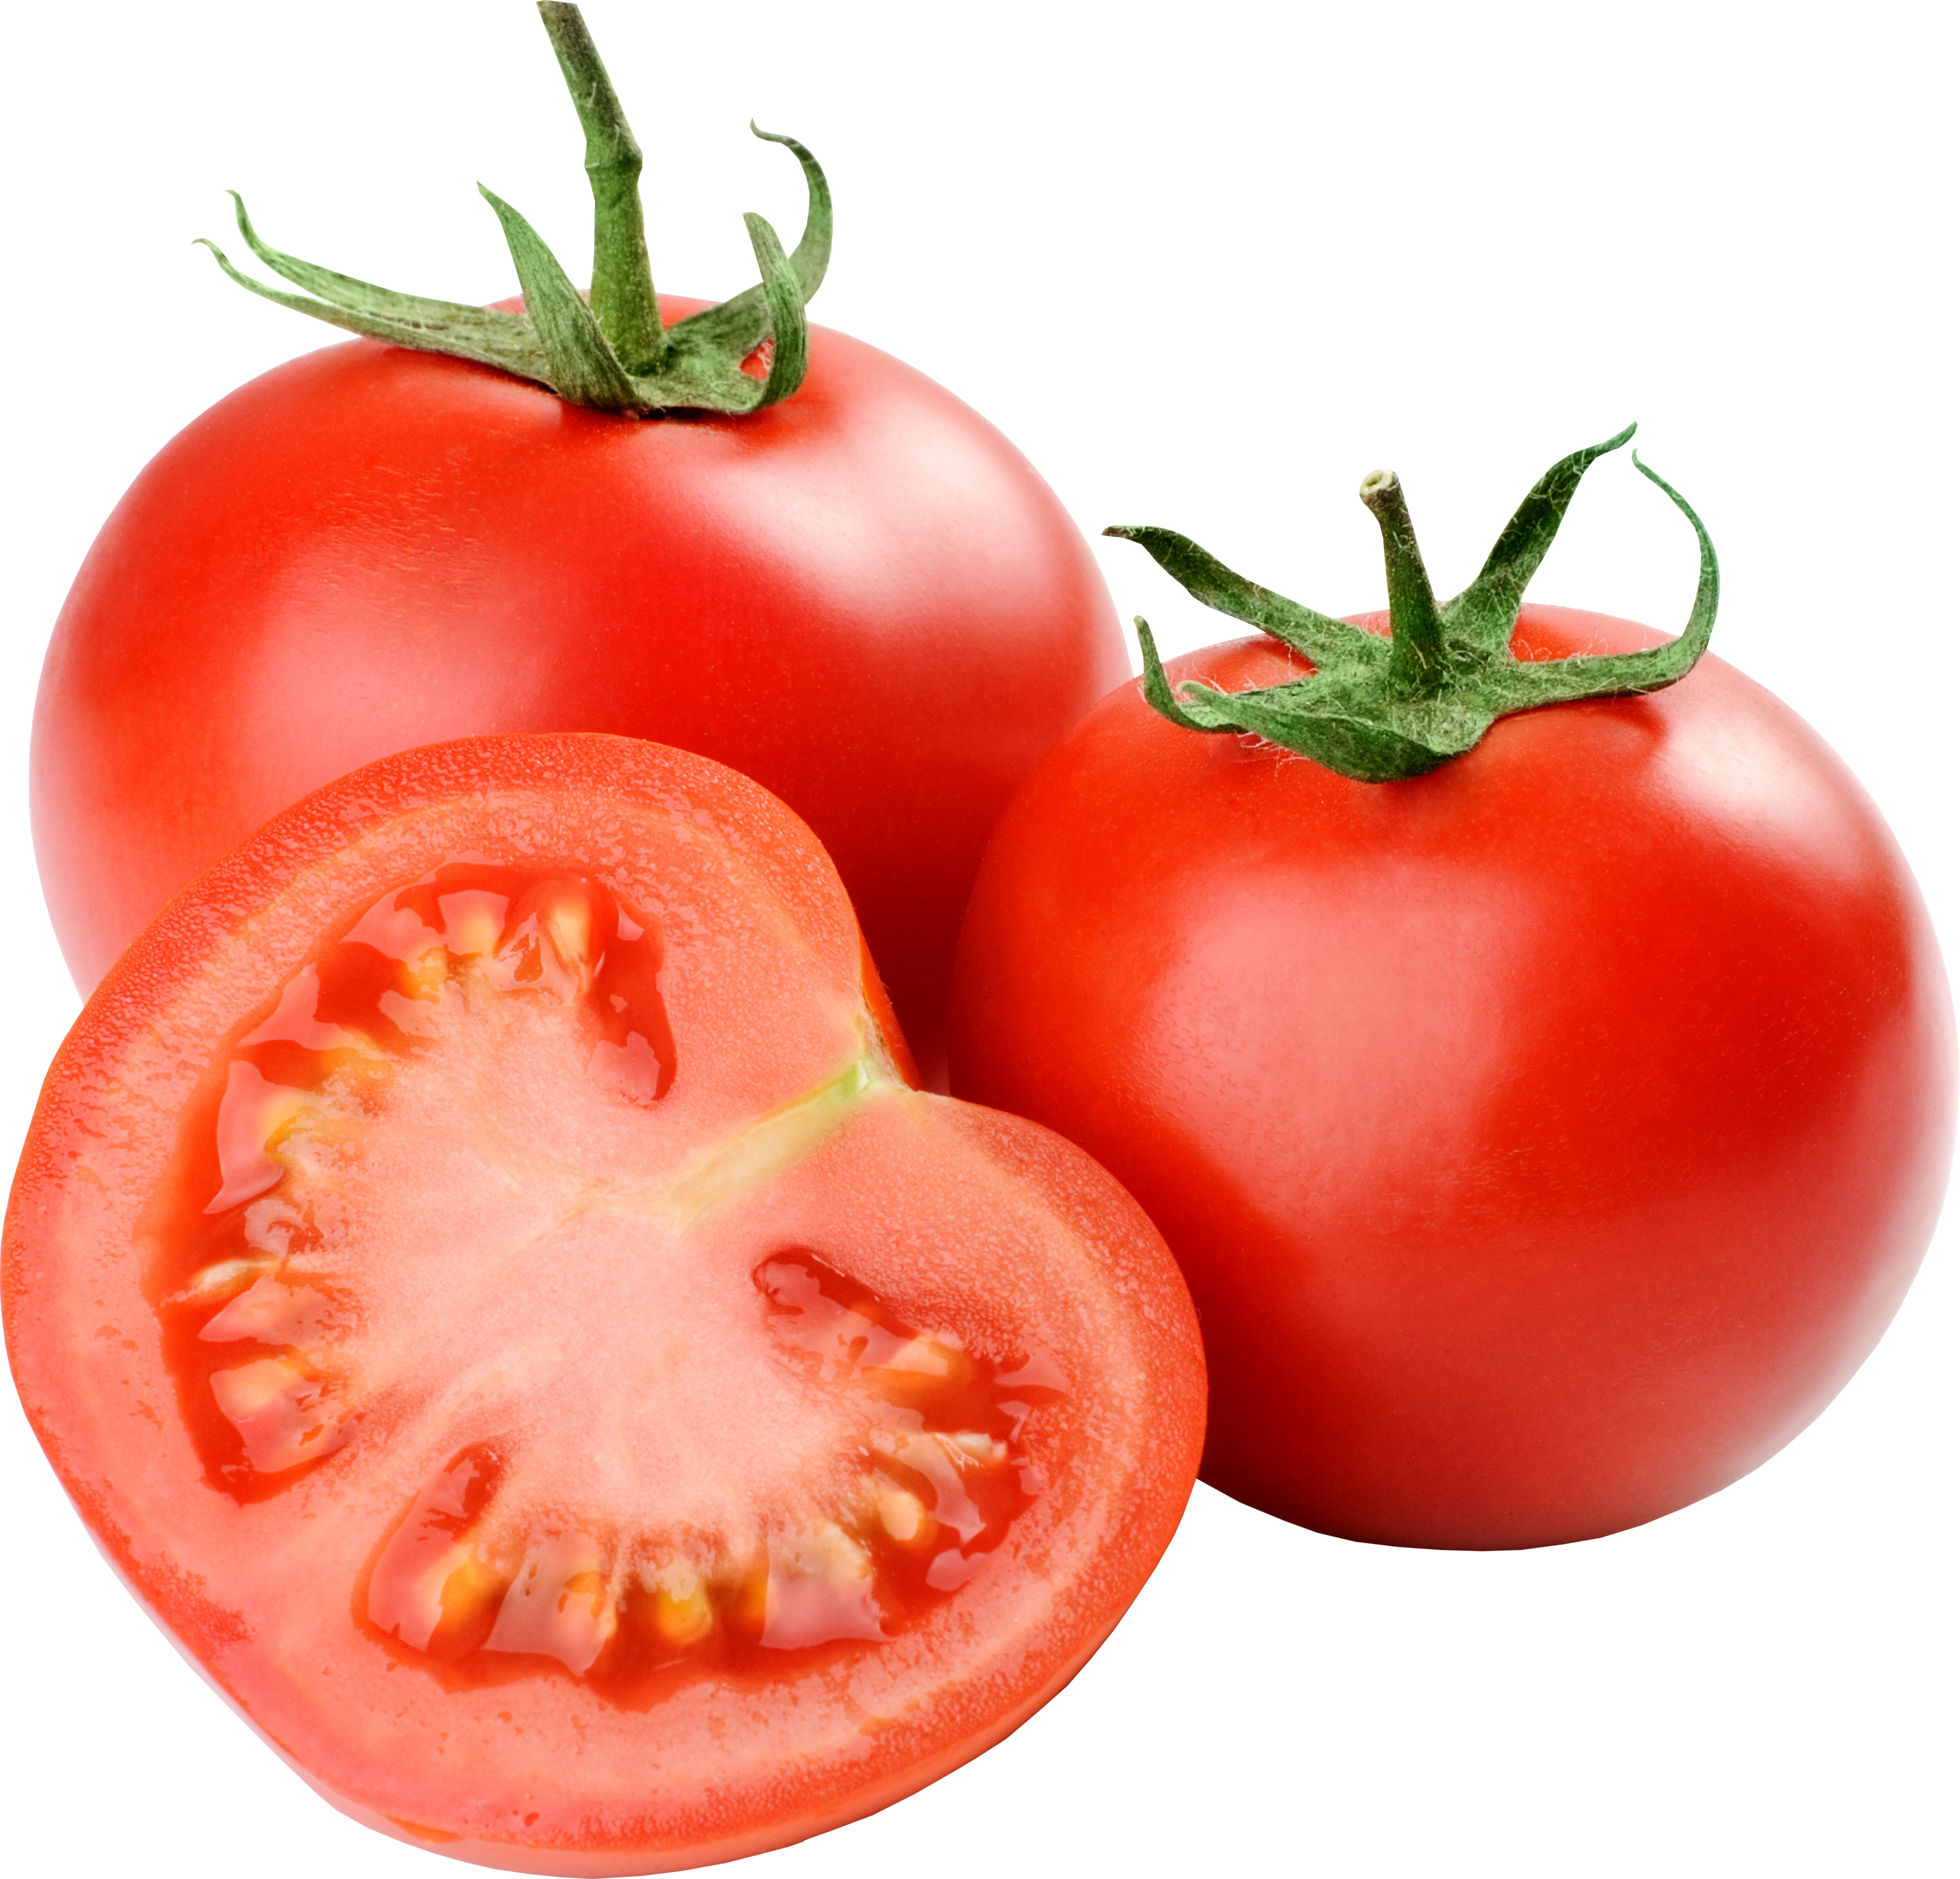 Gewürfelte Tomaten